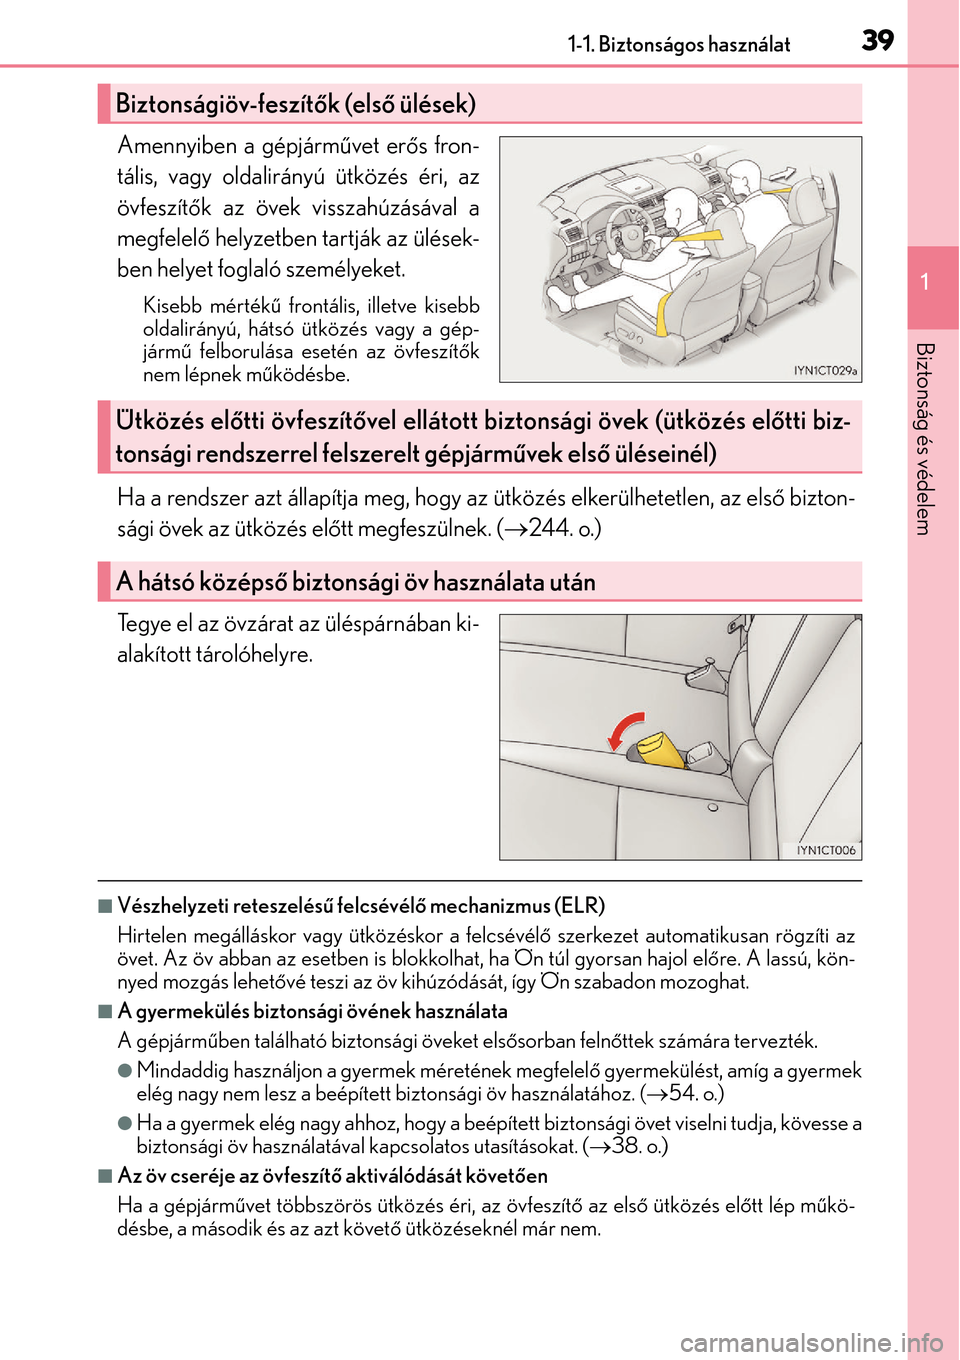 Lexus CT200h 2014  Kezelési útmutató (in Hungarian) 391-1. Biztonságos használat
1
Biztonság és védelem
Amennyiben a gépjárművet er ős fron-
tális, vagy oldalirányú ütközés éri, az
övfeszít ők az övek visszahúzásával a
megfelel �